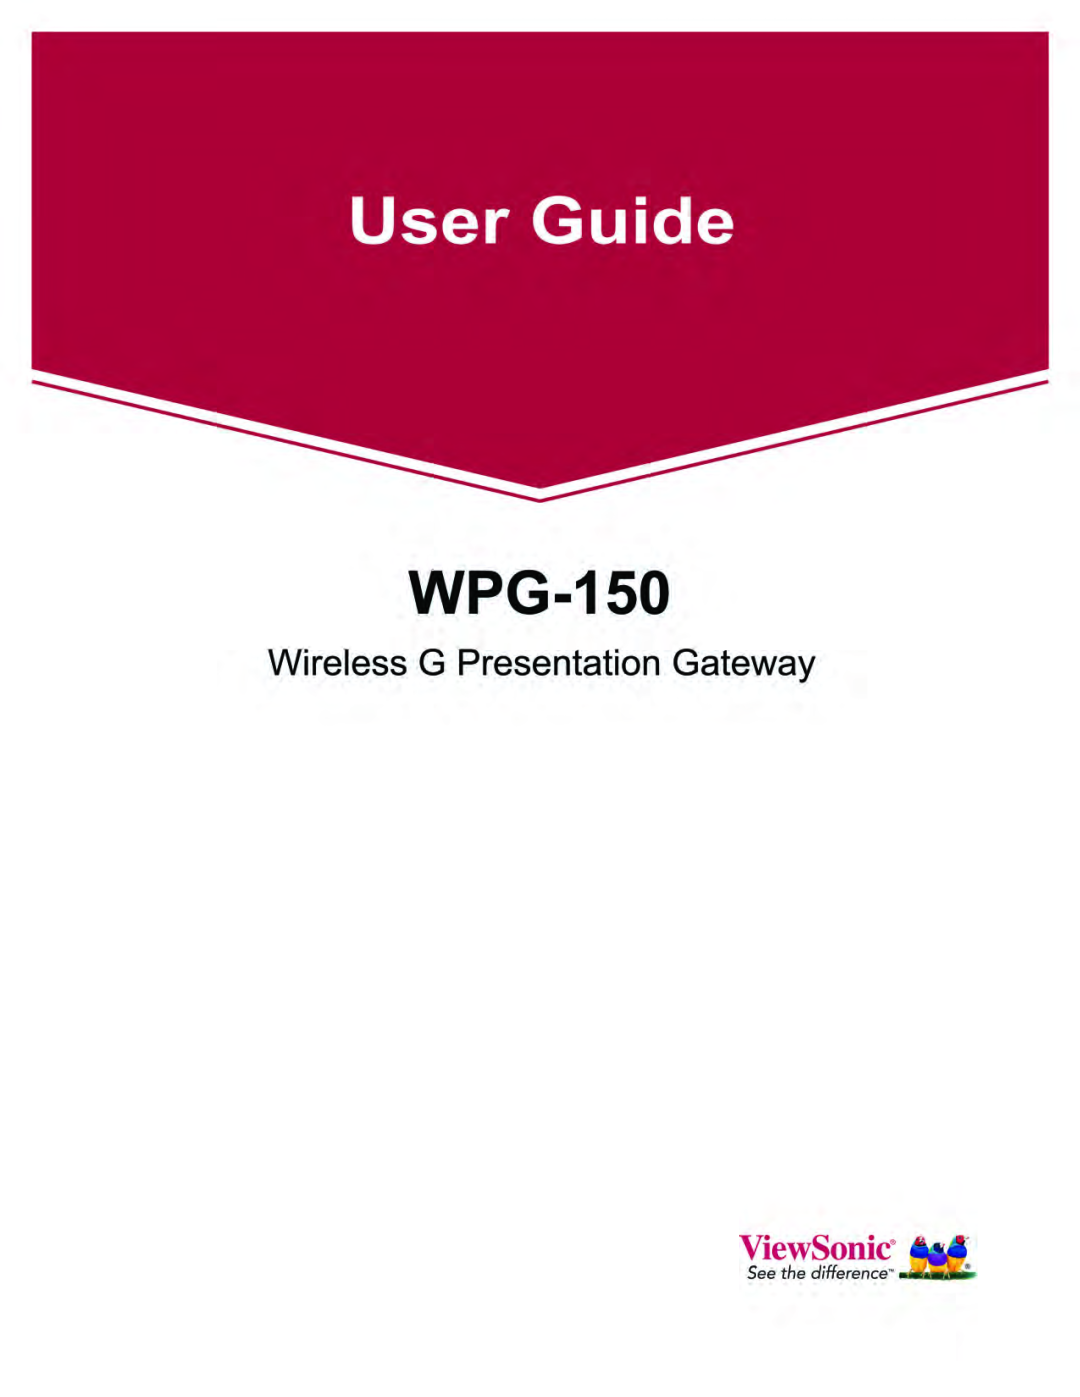 ViewSonic WPG-150 manual 